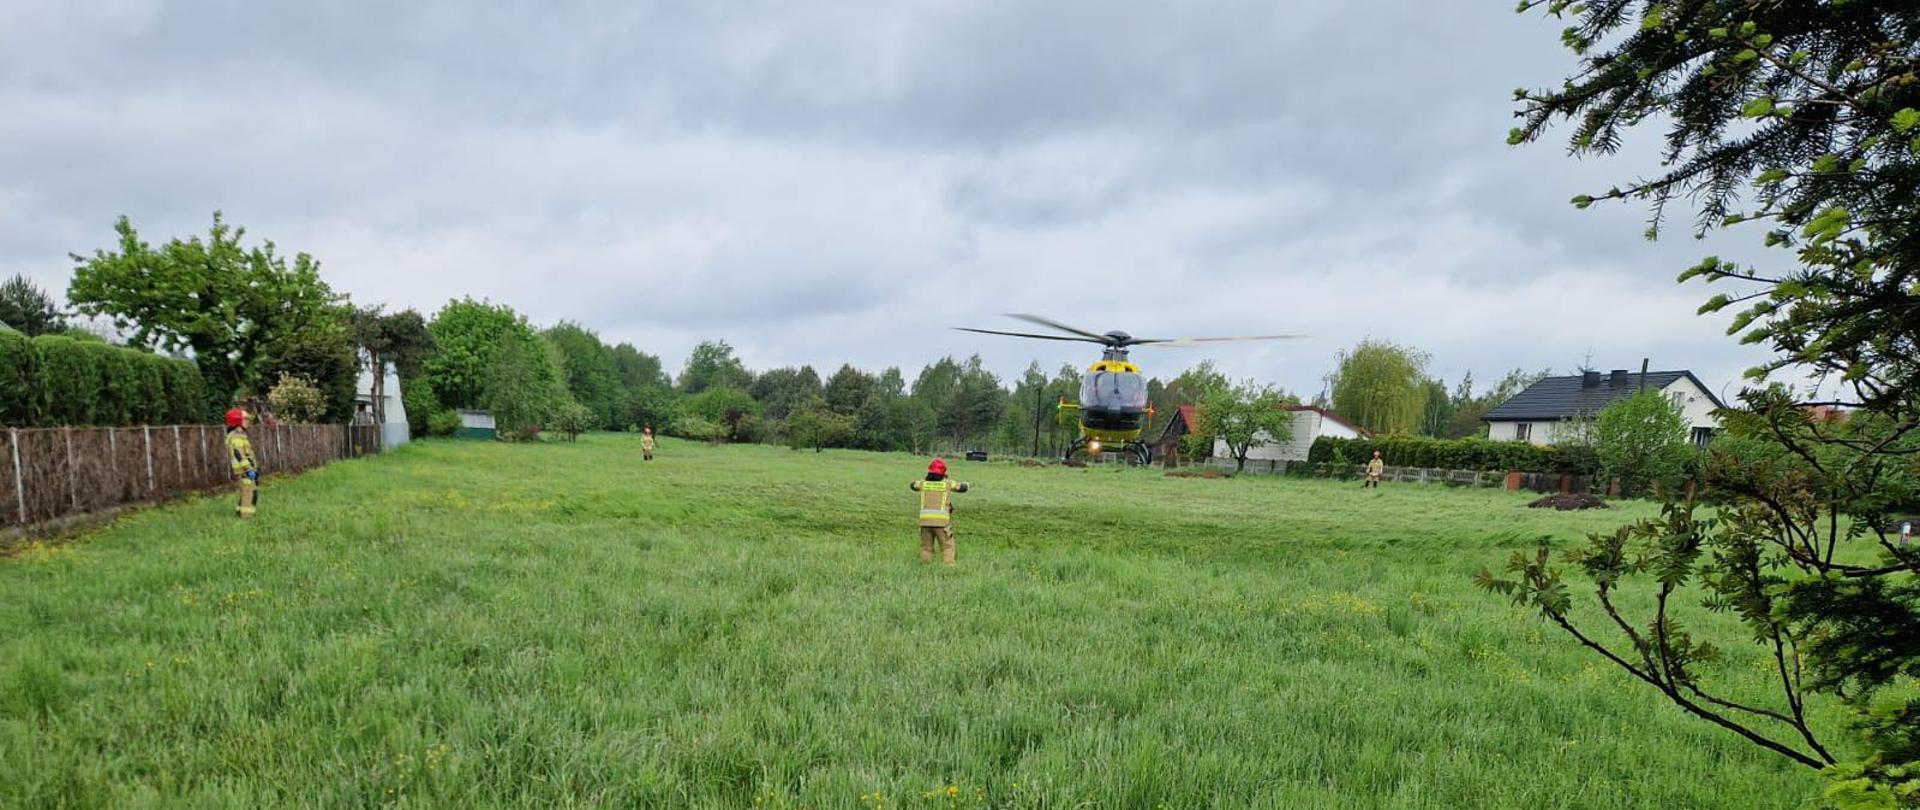 Helikopter lądujący na polu, strażacy wyznaczają miejsce lądowania